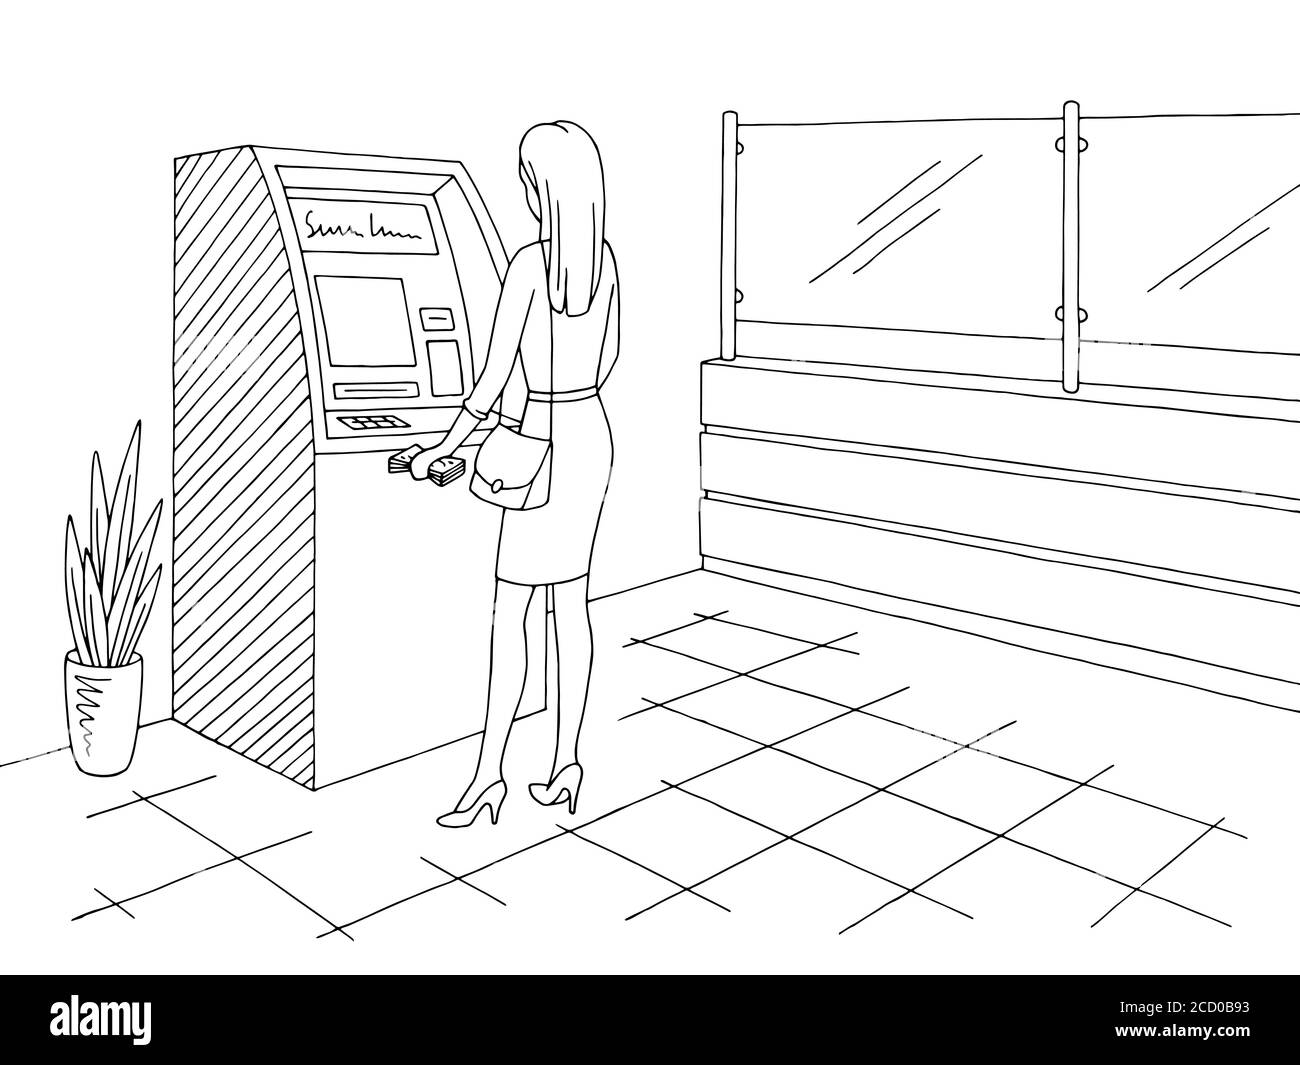 Motif intérieur de la banque noir blanc croquis vecteur d'illustration. Femme qui retire de l'argent d'un guichet automatique Illustration de Vecteur